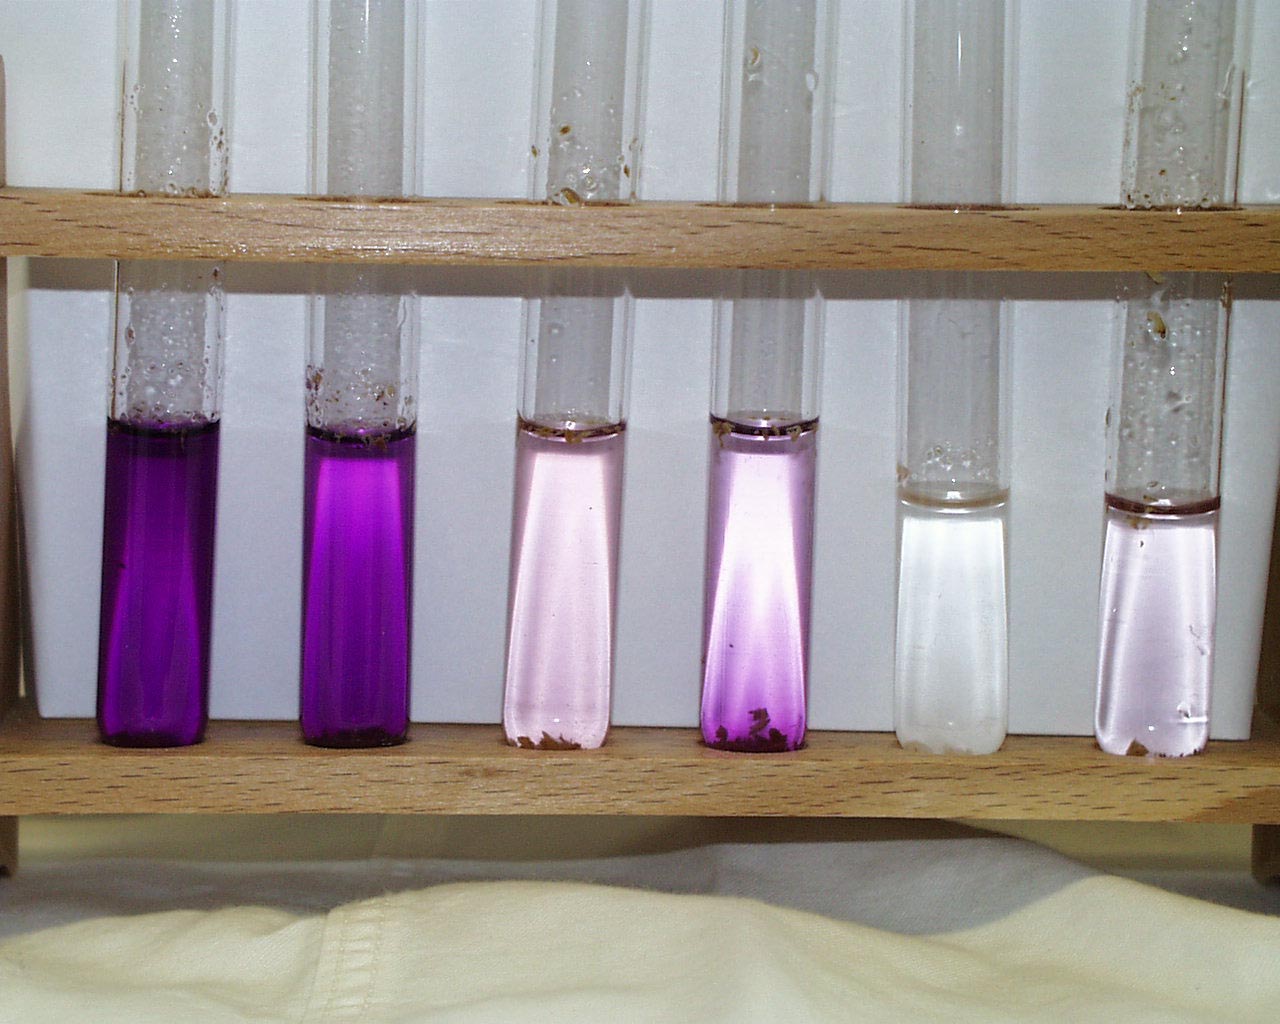 Foto von Reagenzglsern im Halter. Von links nach rechts nimmt die Frbungsintensitt (violette Farbe)  ab